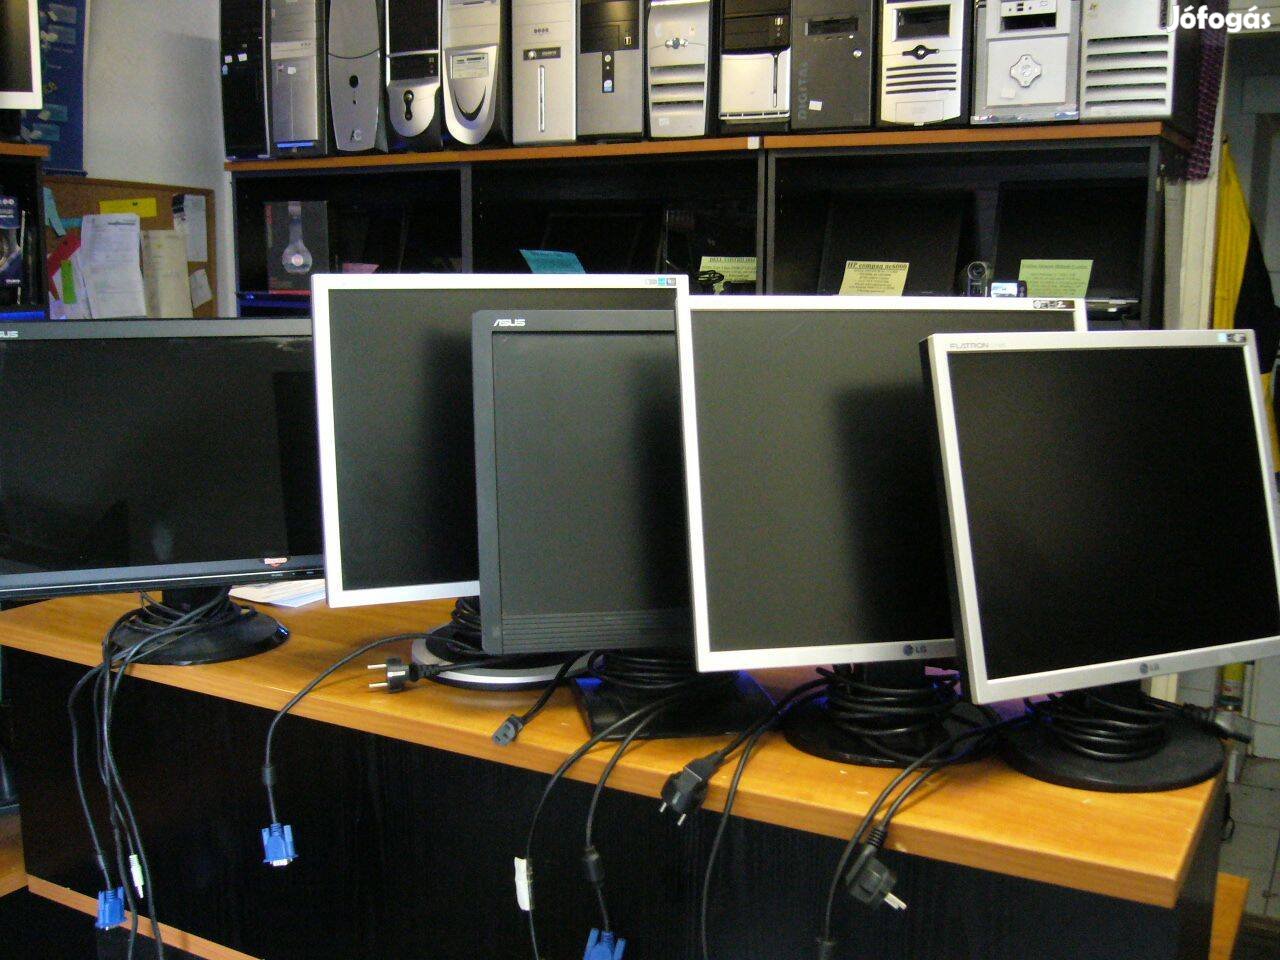 17" -os 4:3-as képarányú LCD monitorok